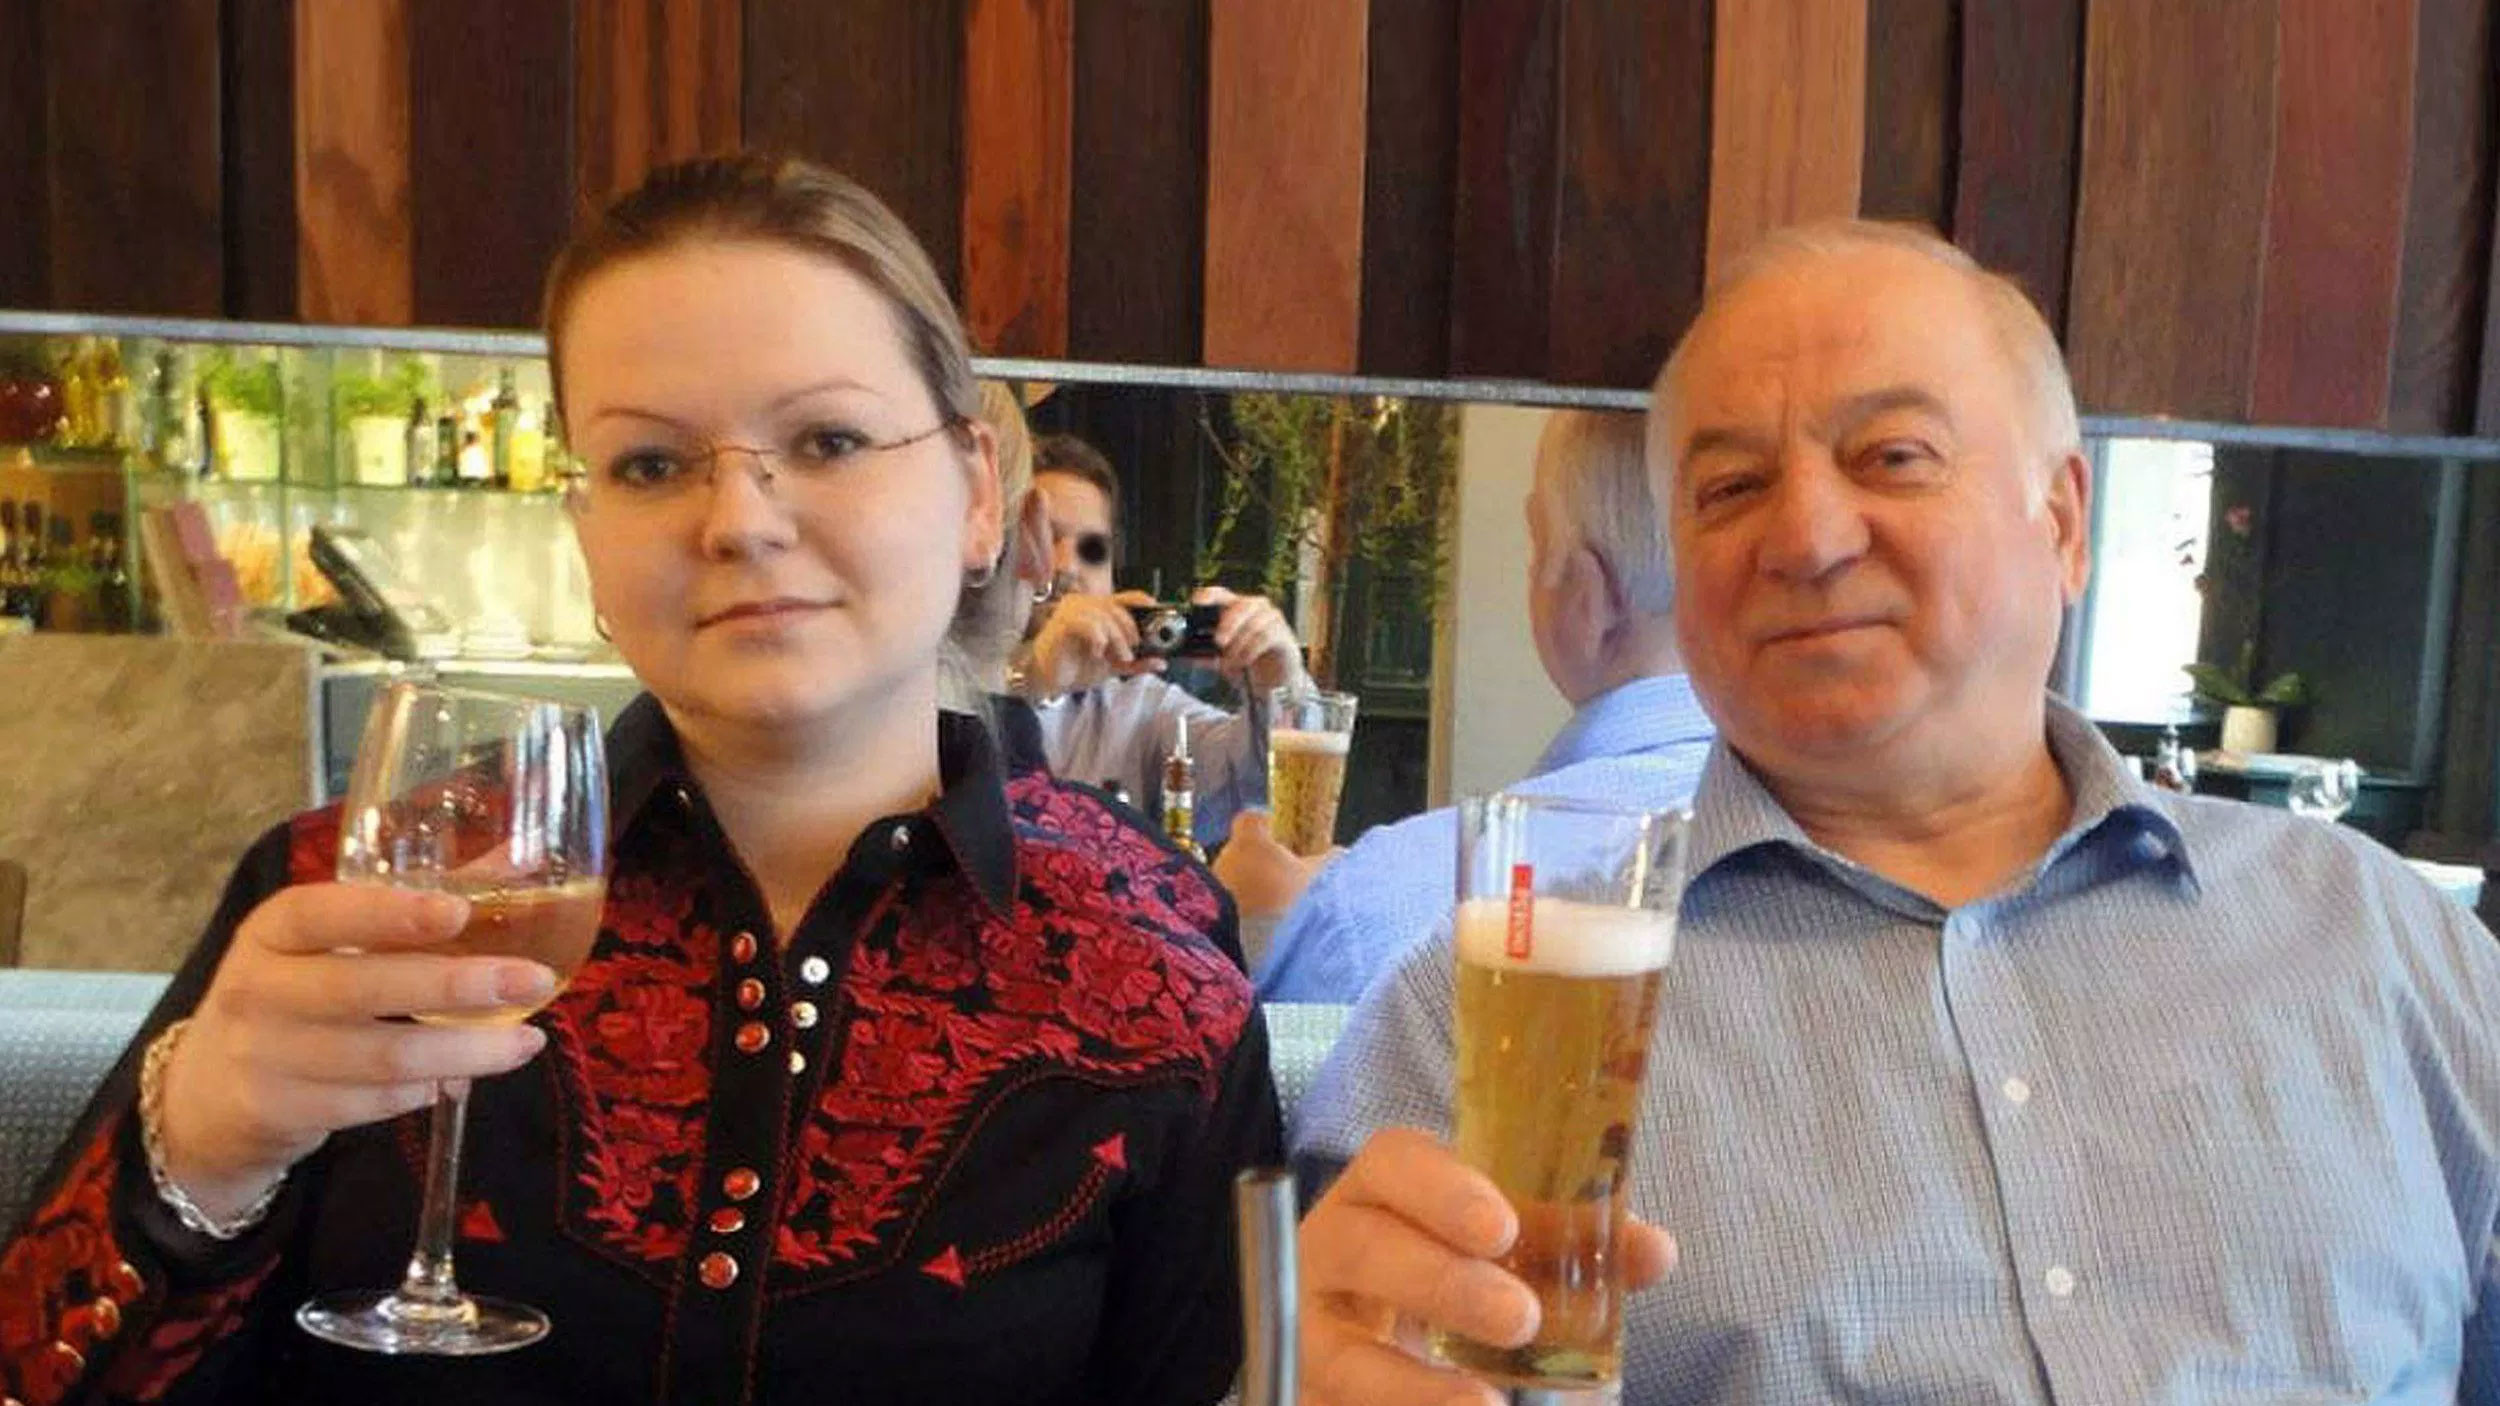 Сергей Скрипаль и его дочь Юлия.&nbsp;Фото:&nbsp;&copy;&nbsp;Public Domain Pictures